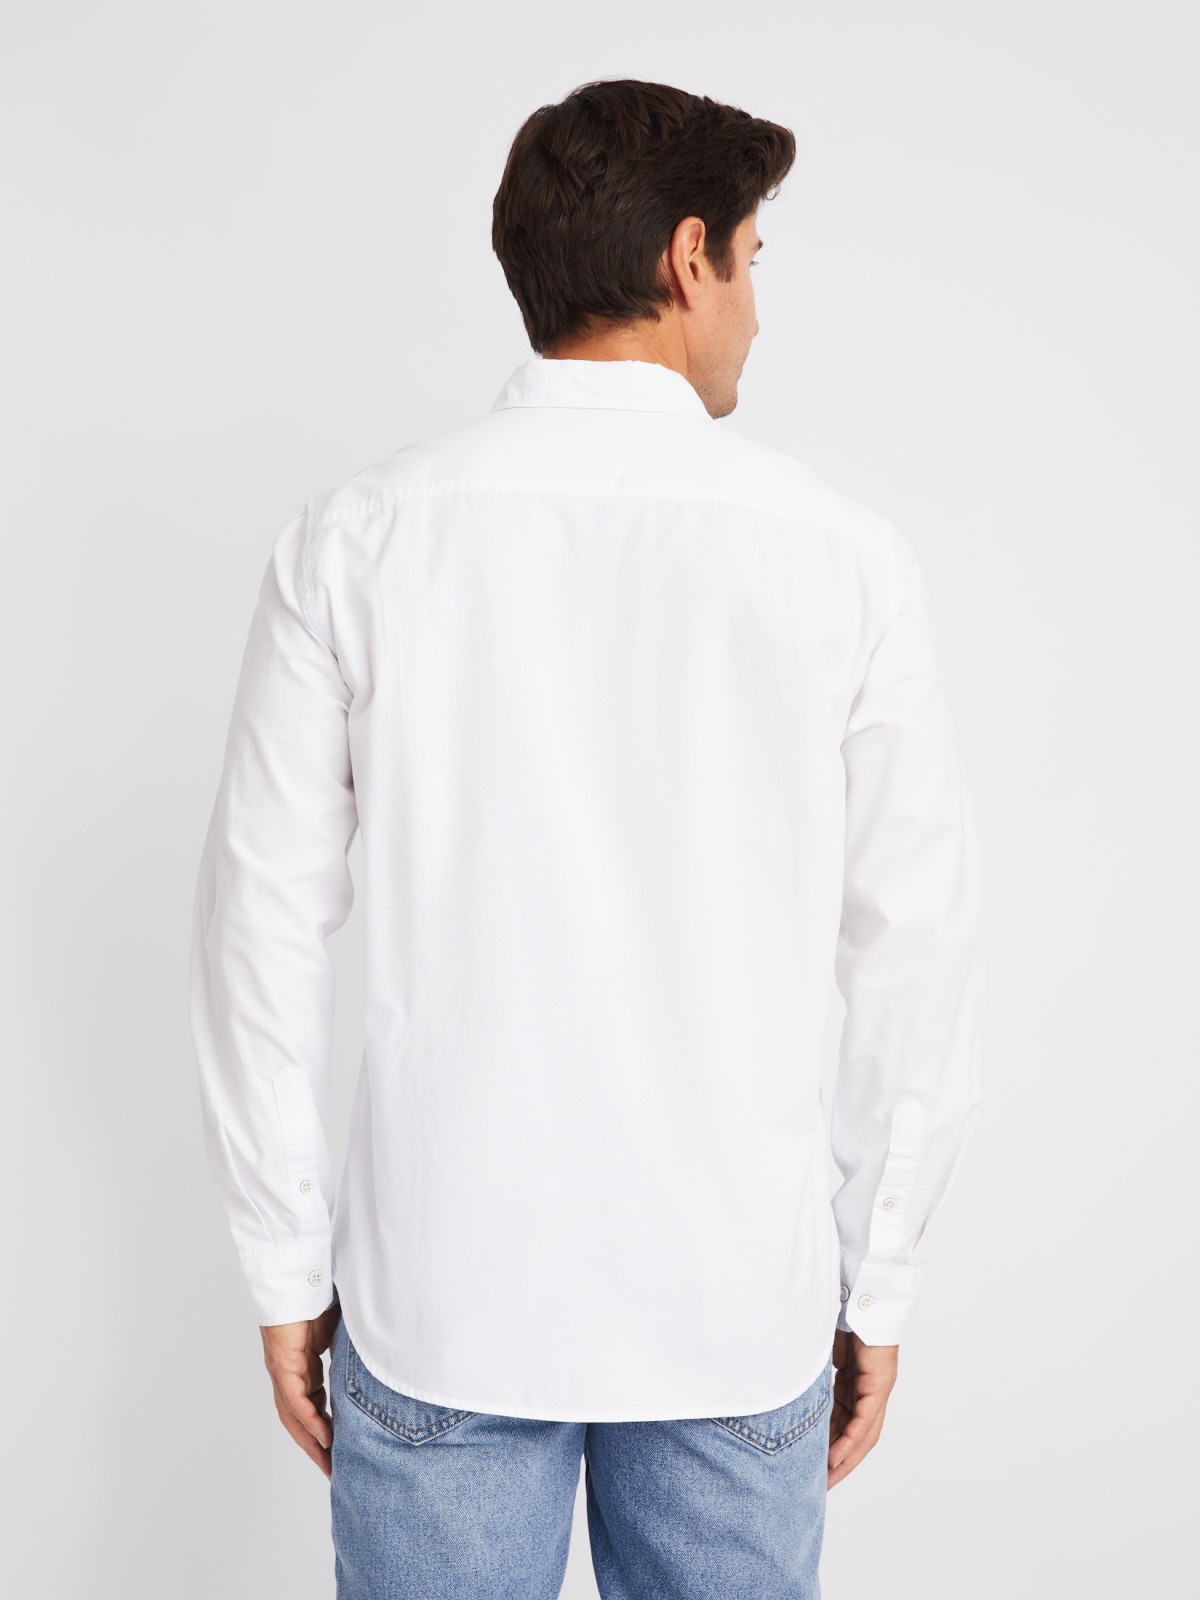 Рубашка из хлопка с длинным рукавом и карманом zolla 014132159013, цвет белый, размер S - фото 5